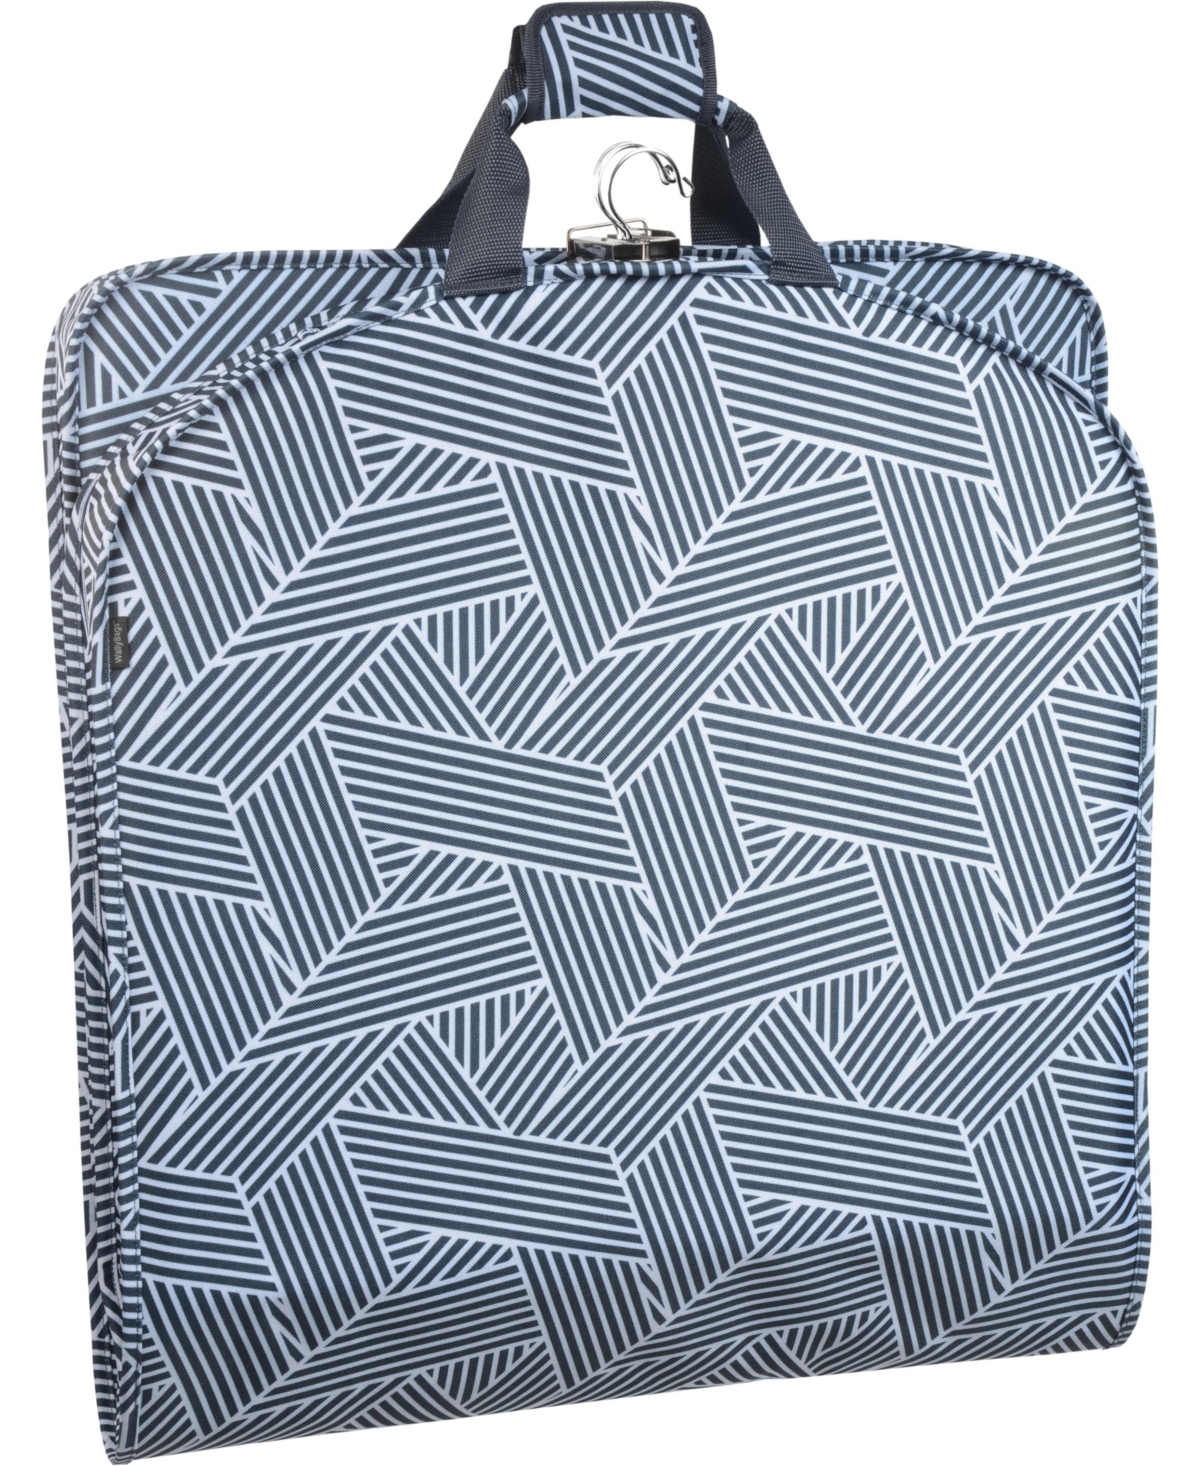 52" Deluxe Travel Garment Bag - Zebra